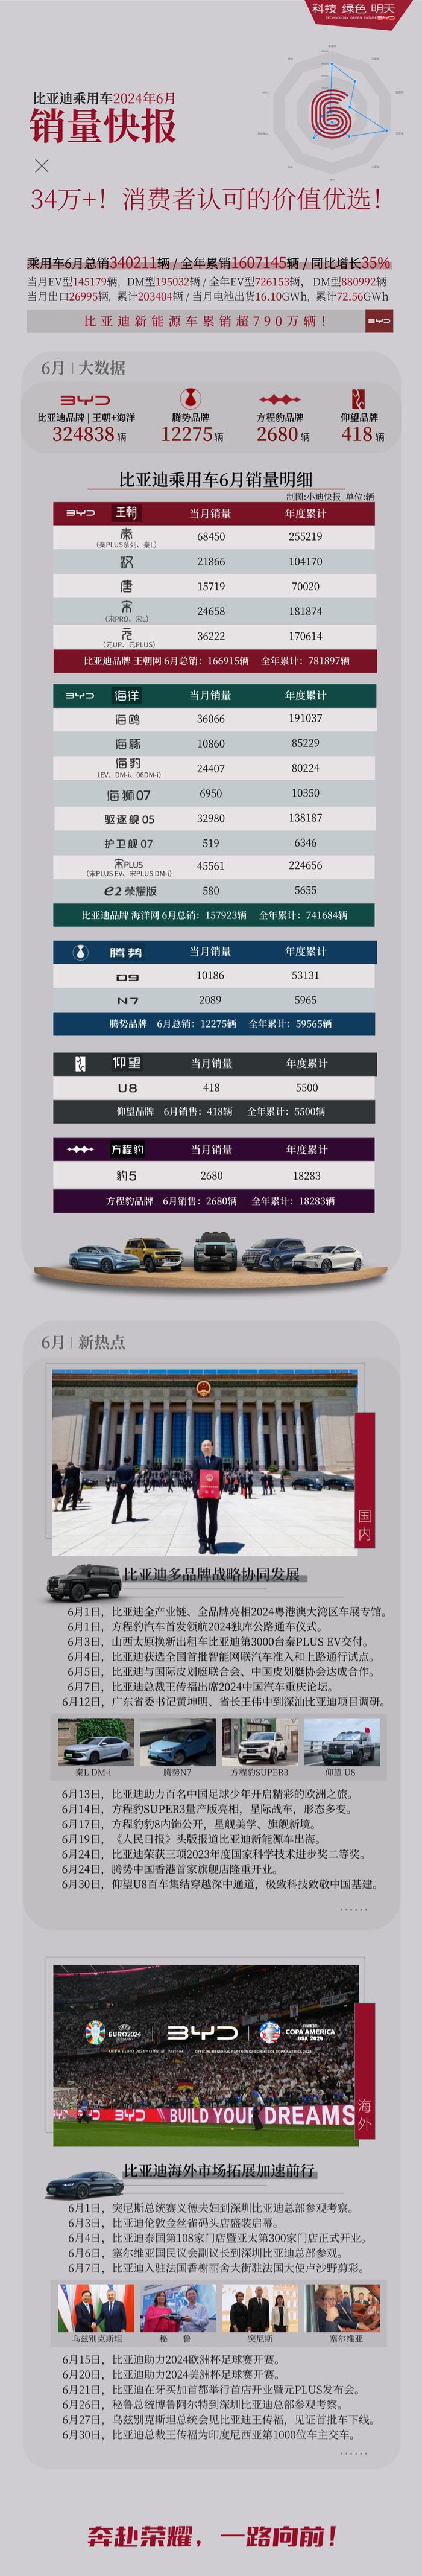 比亚迪各车型 6 月详细交付信息公布：秦家族 68450 辆蝉联榜首